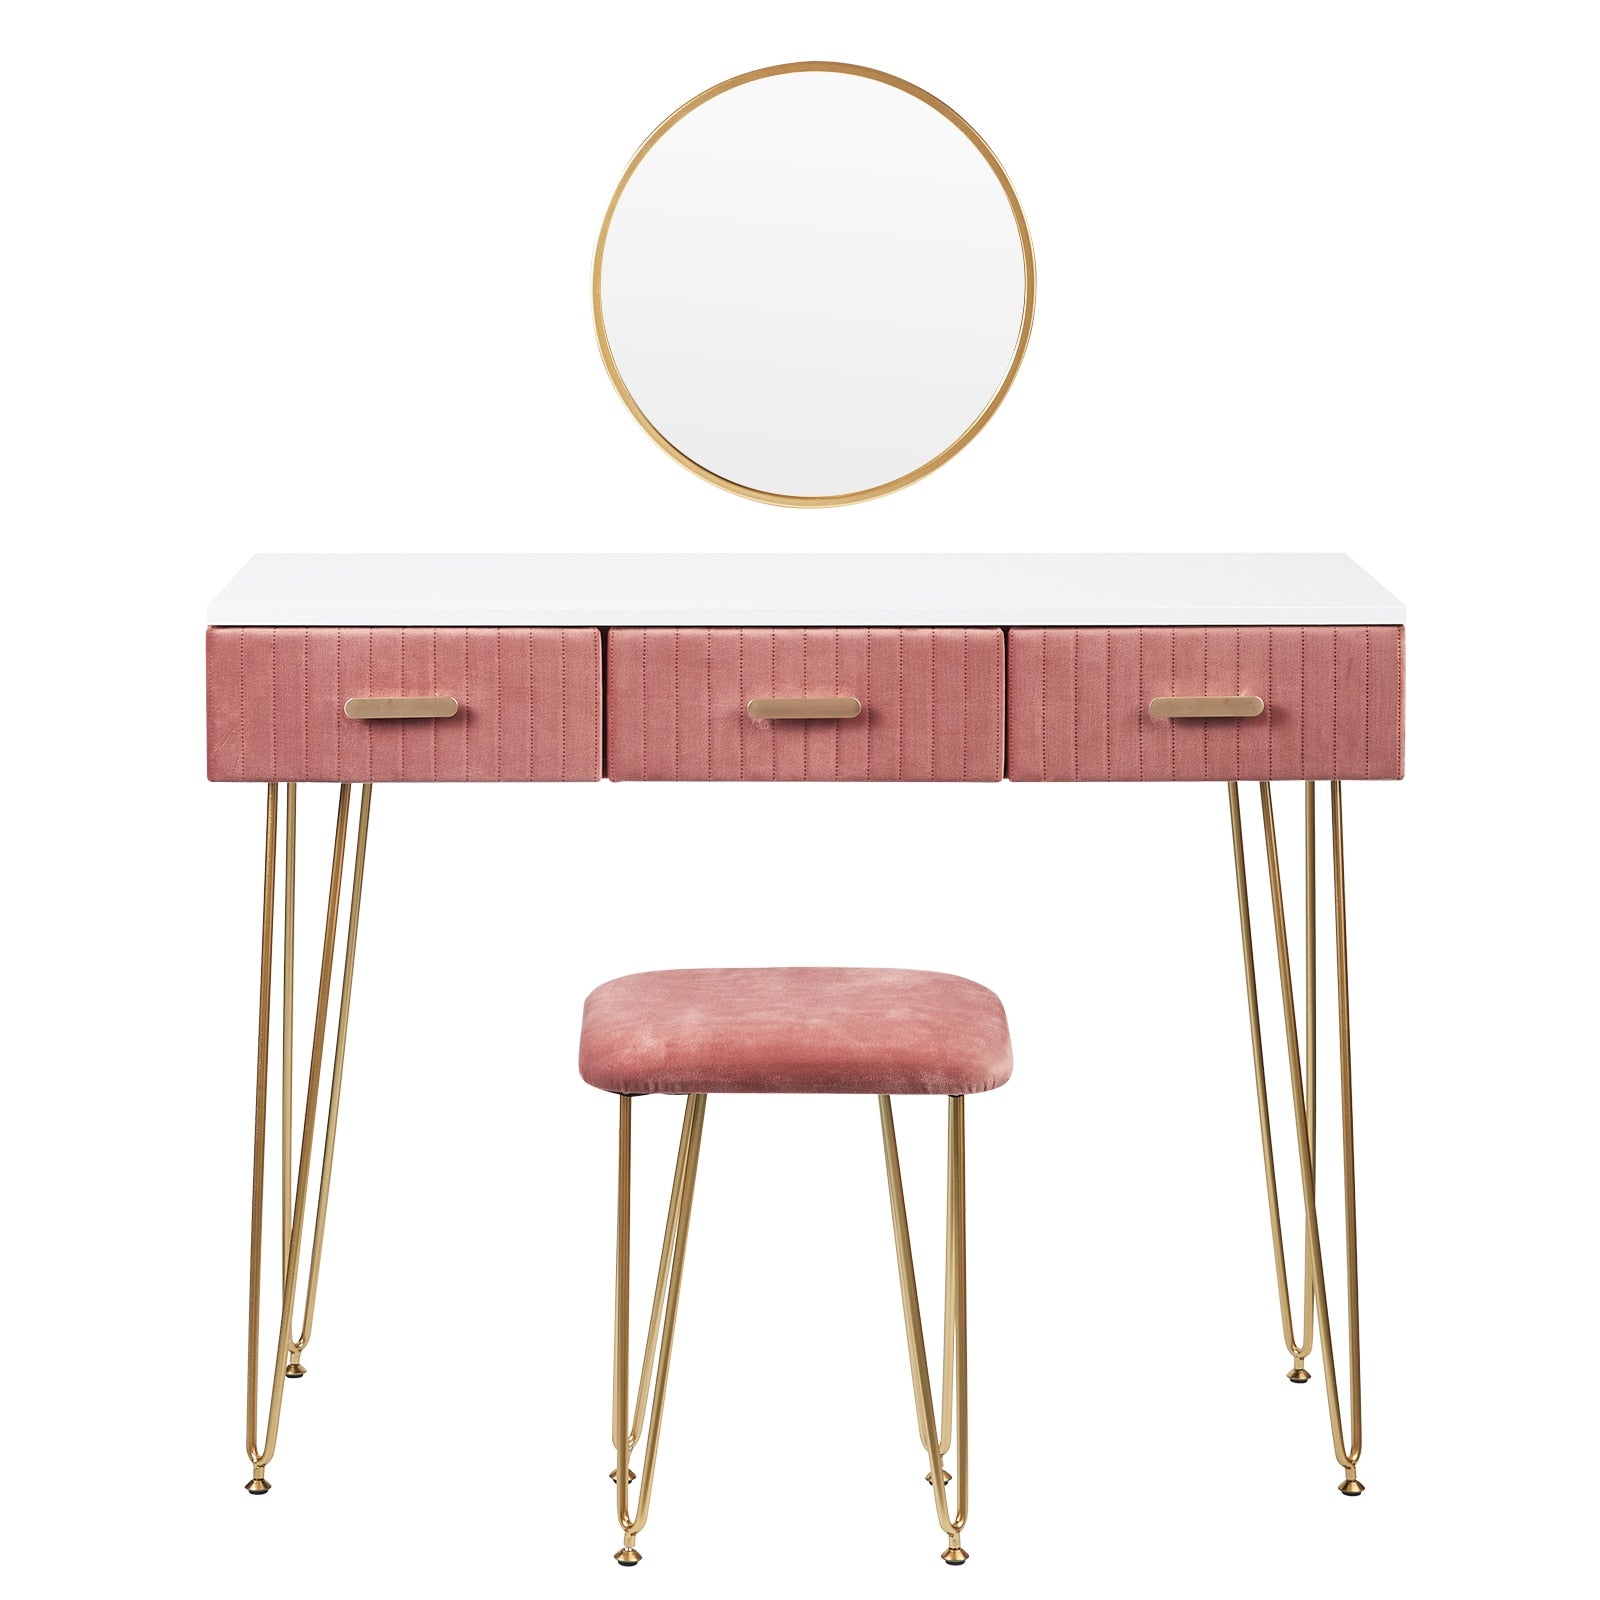 Nordicz fluwelen kaptafel met spiegel en stoel - Design Meubelz